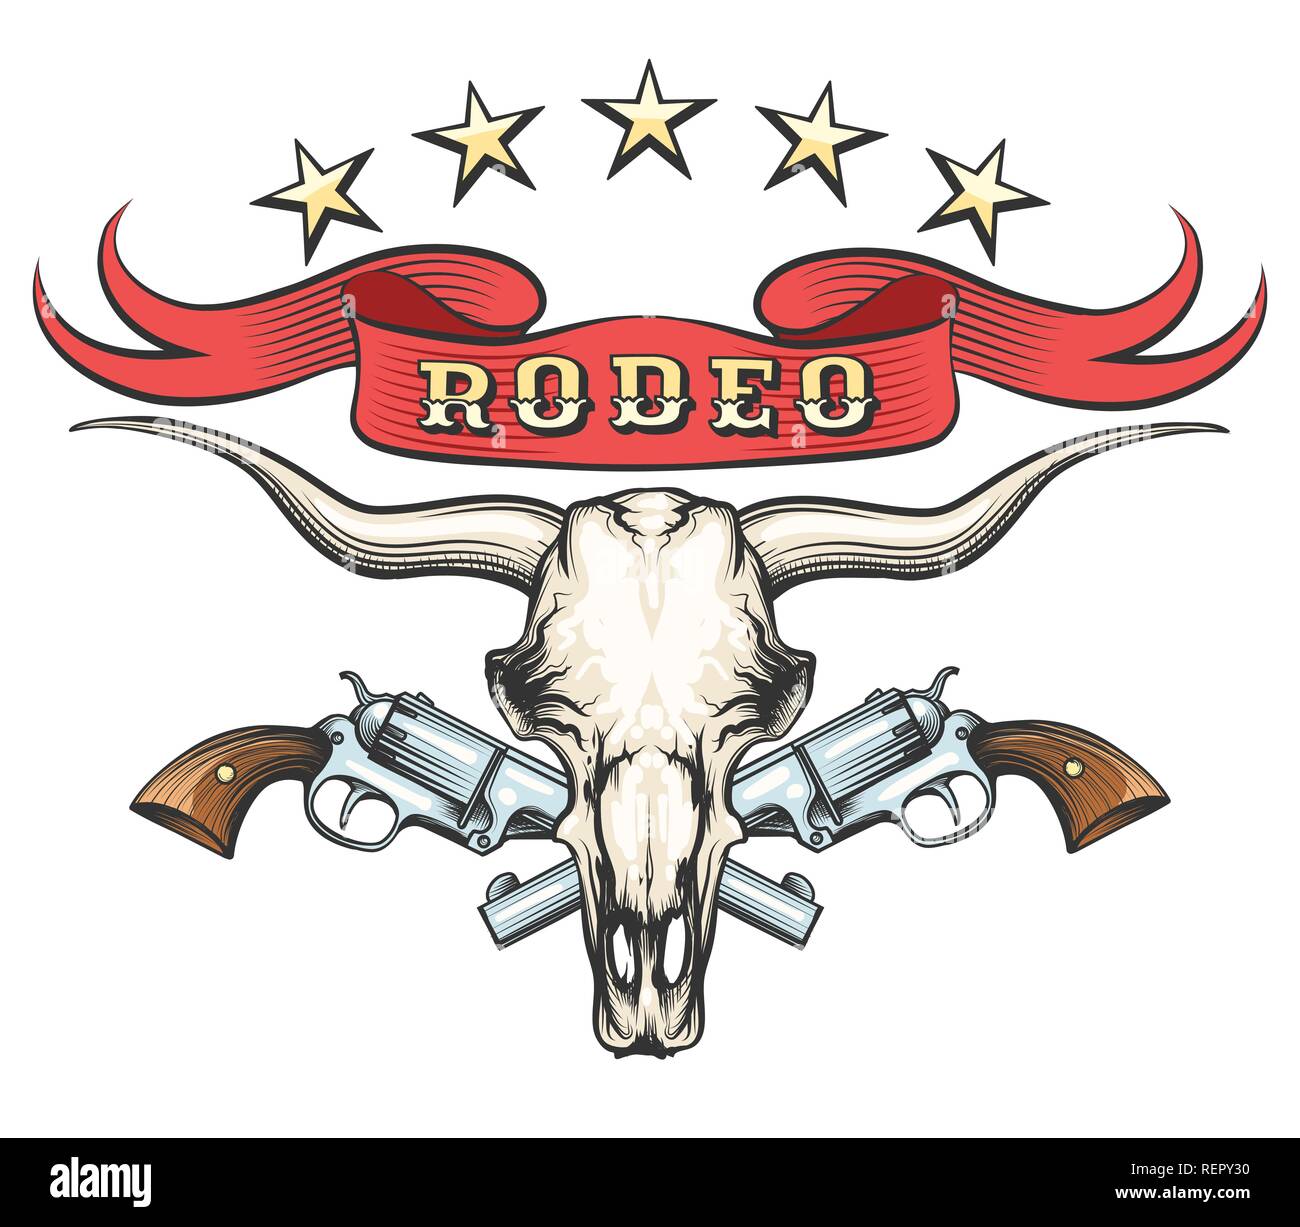 Cráneo de toro con un par de revólveres y cinta con redacción Rodeo dibujado en estilo de tatuaje. Ilustración vectorial Ilustración del Vector